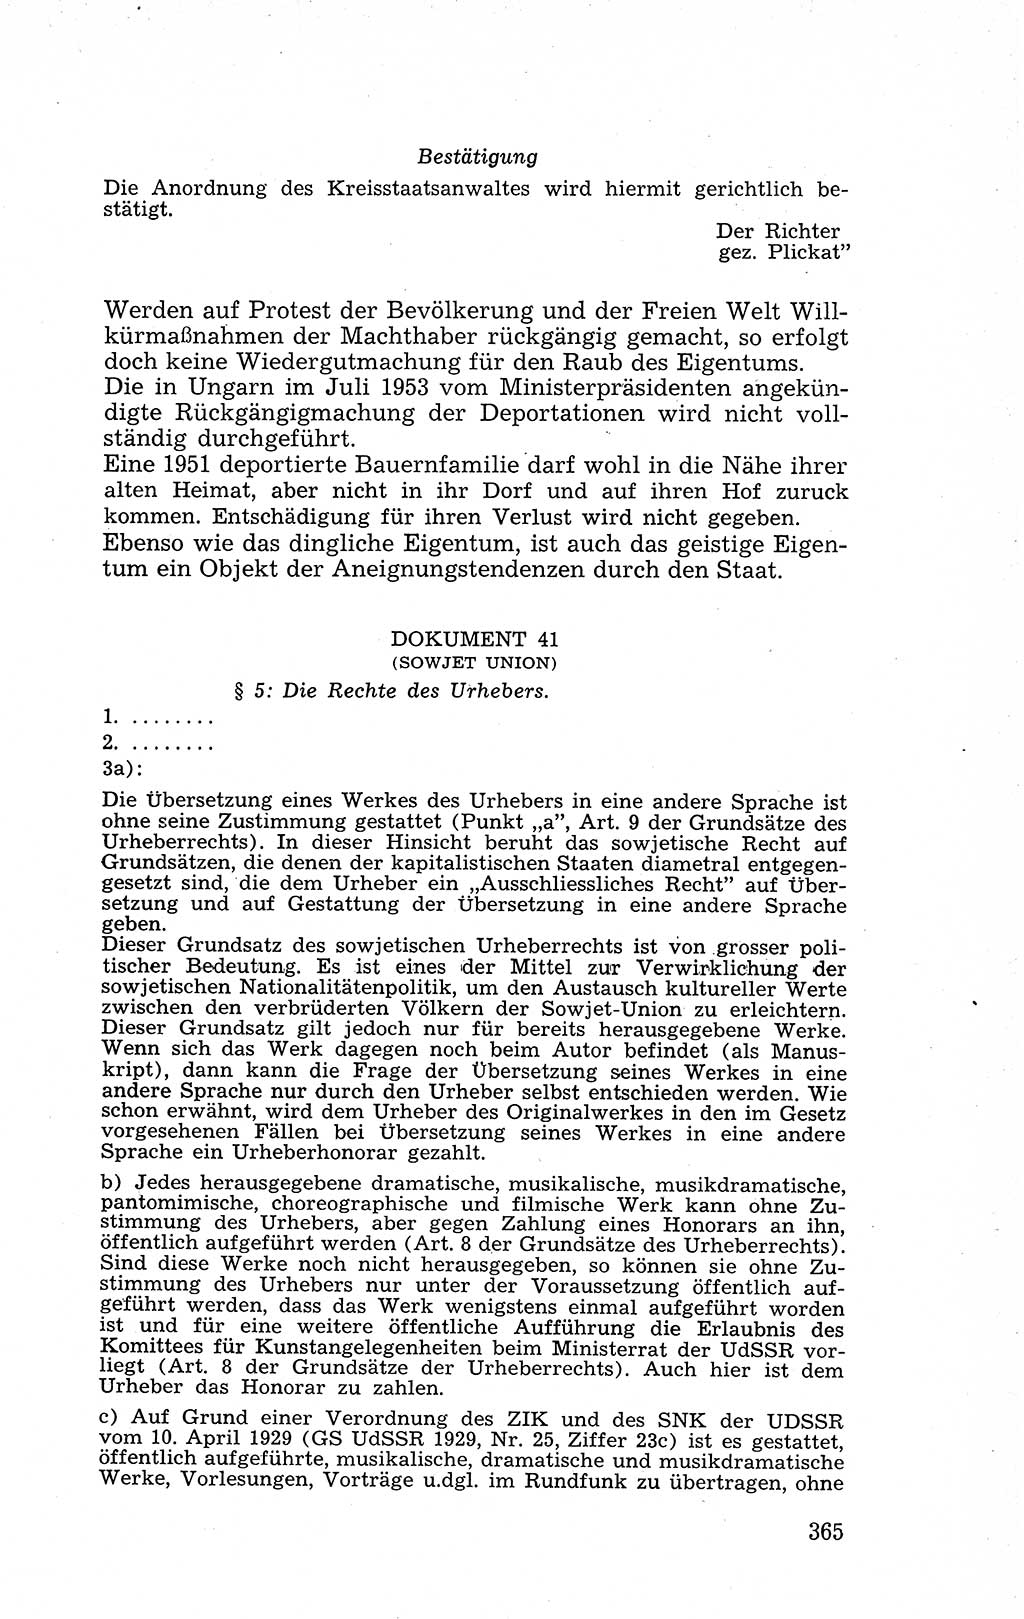 Recht in Fesseln, Dokumente, Internationale Juristen-Kommission [Bundesrepublik Deutschland (BRD)] 1955, Seite 365 (R. Dok. IJK BRD 1955, S. 365)